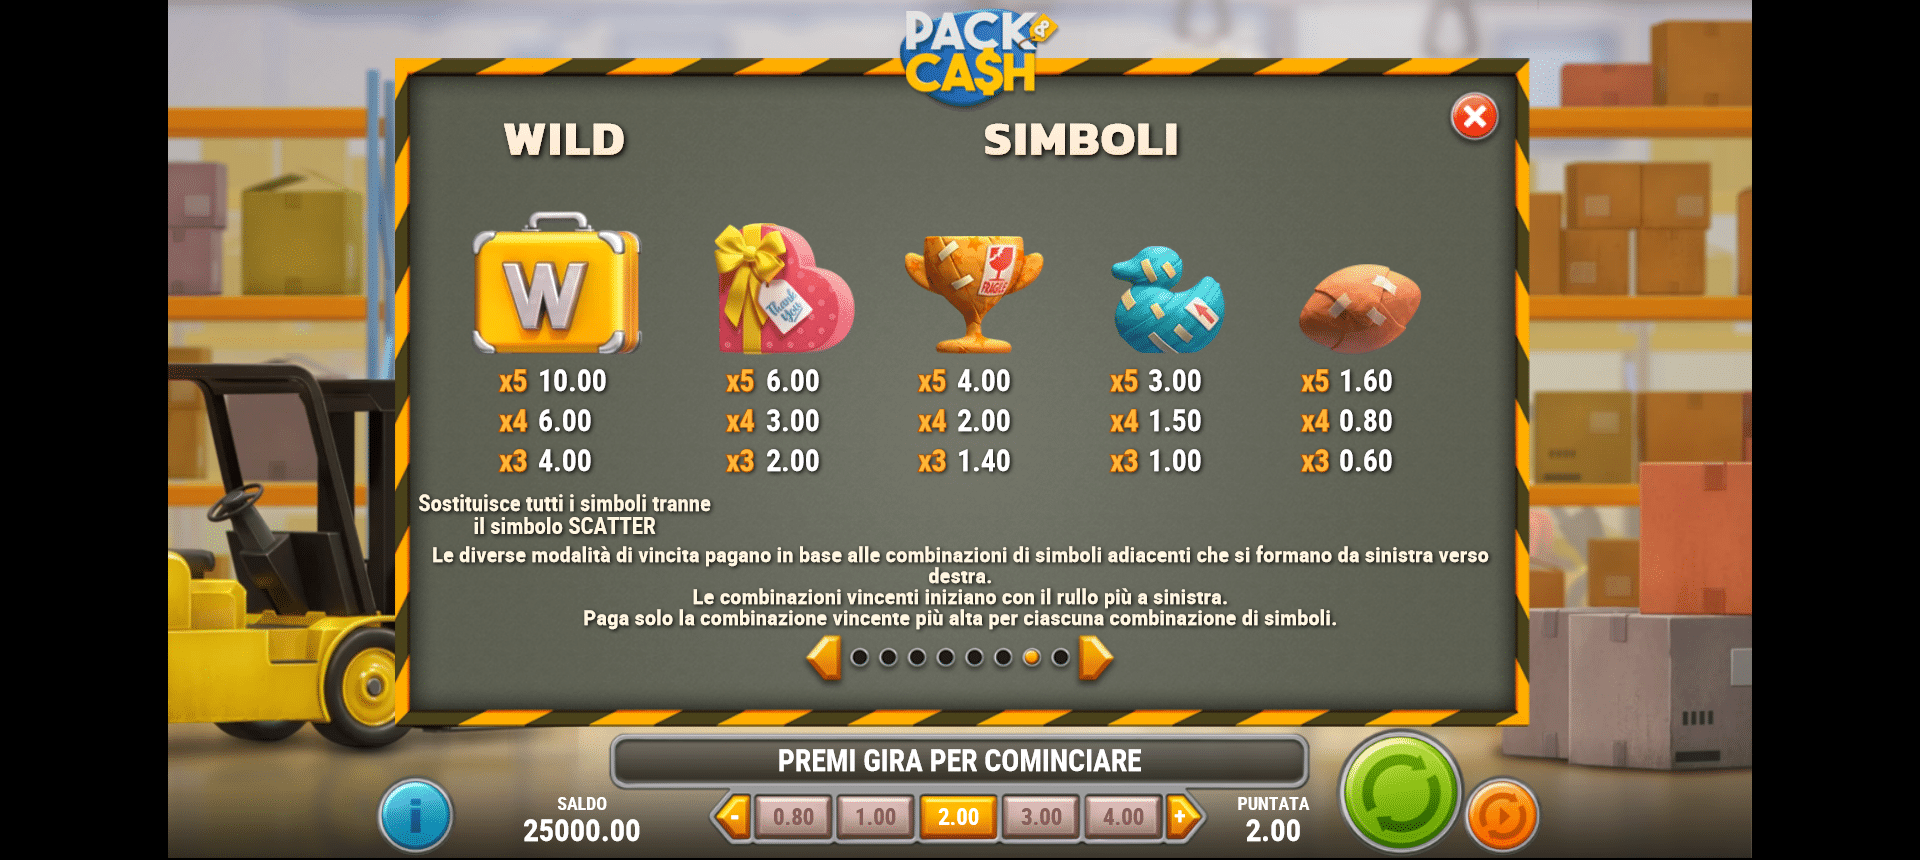 tabella dei simboli della slot online pack and cash